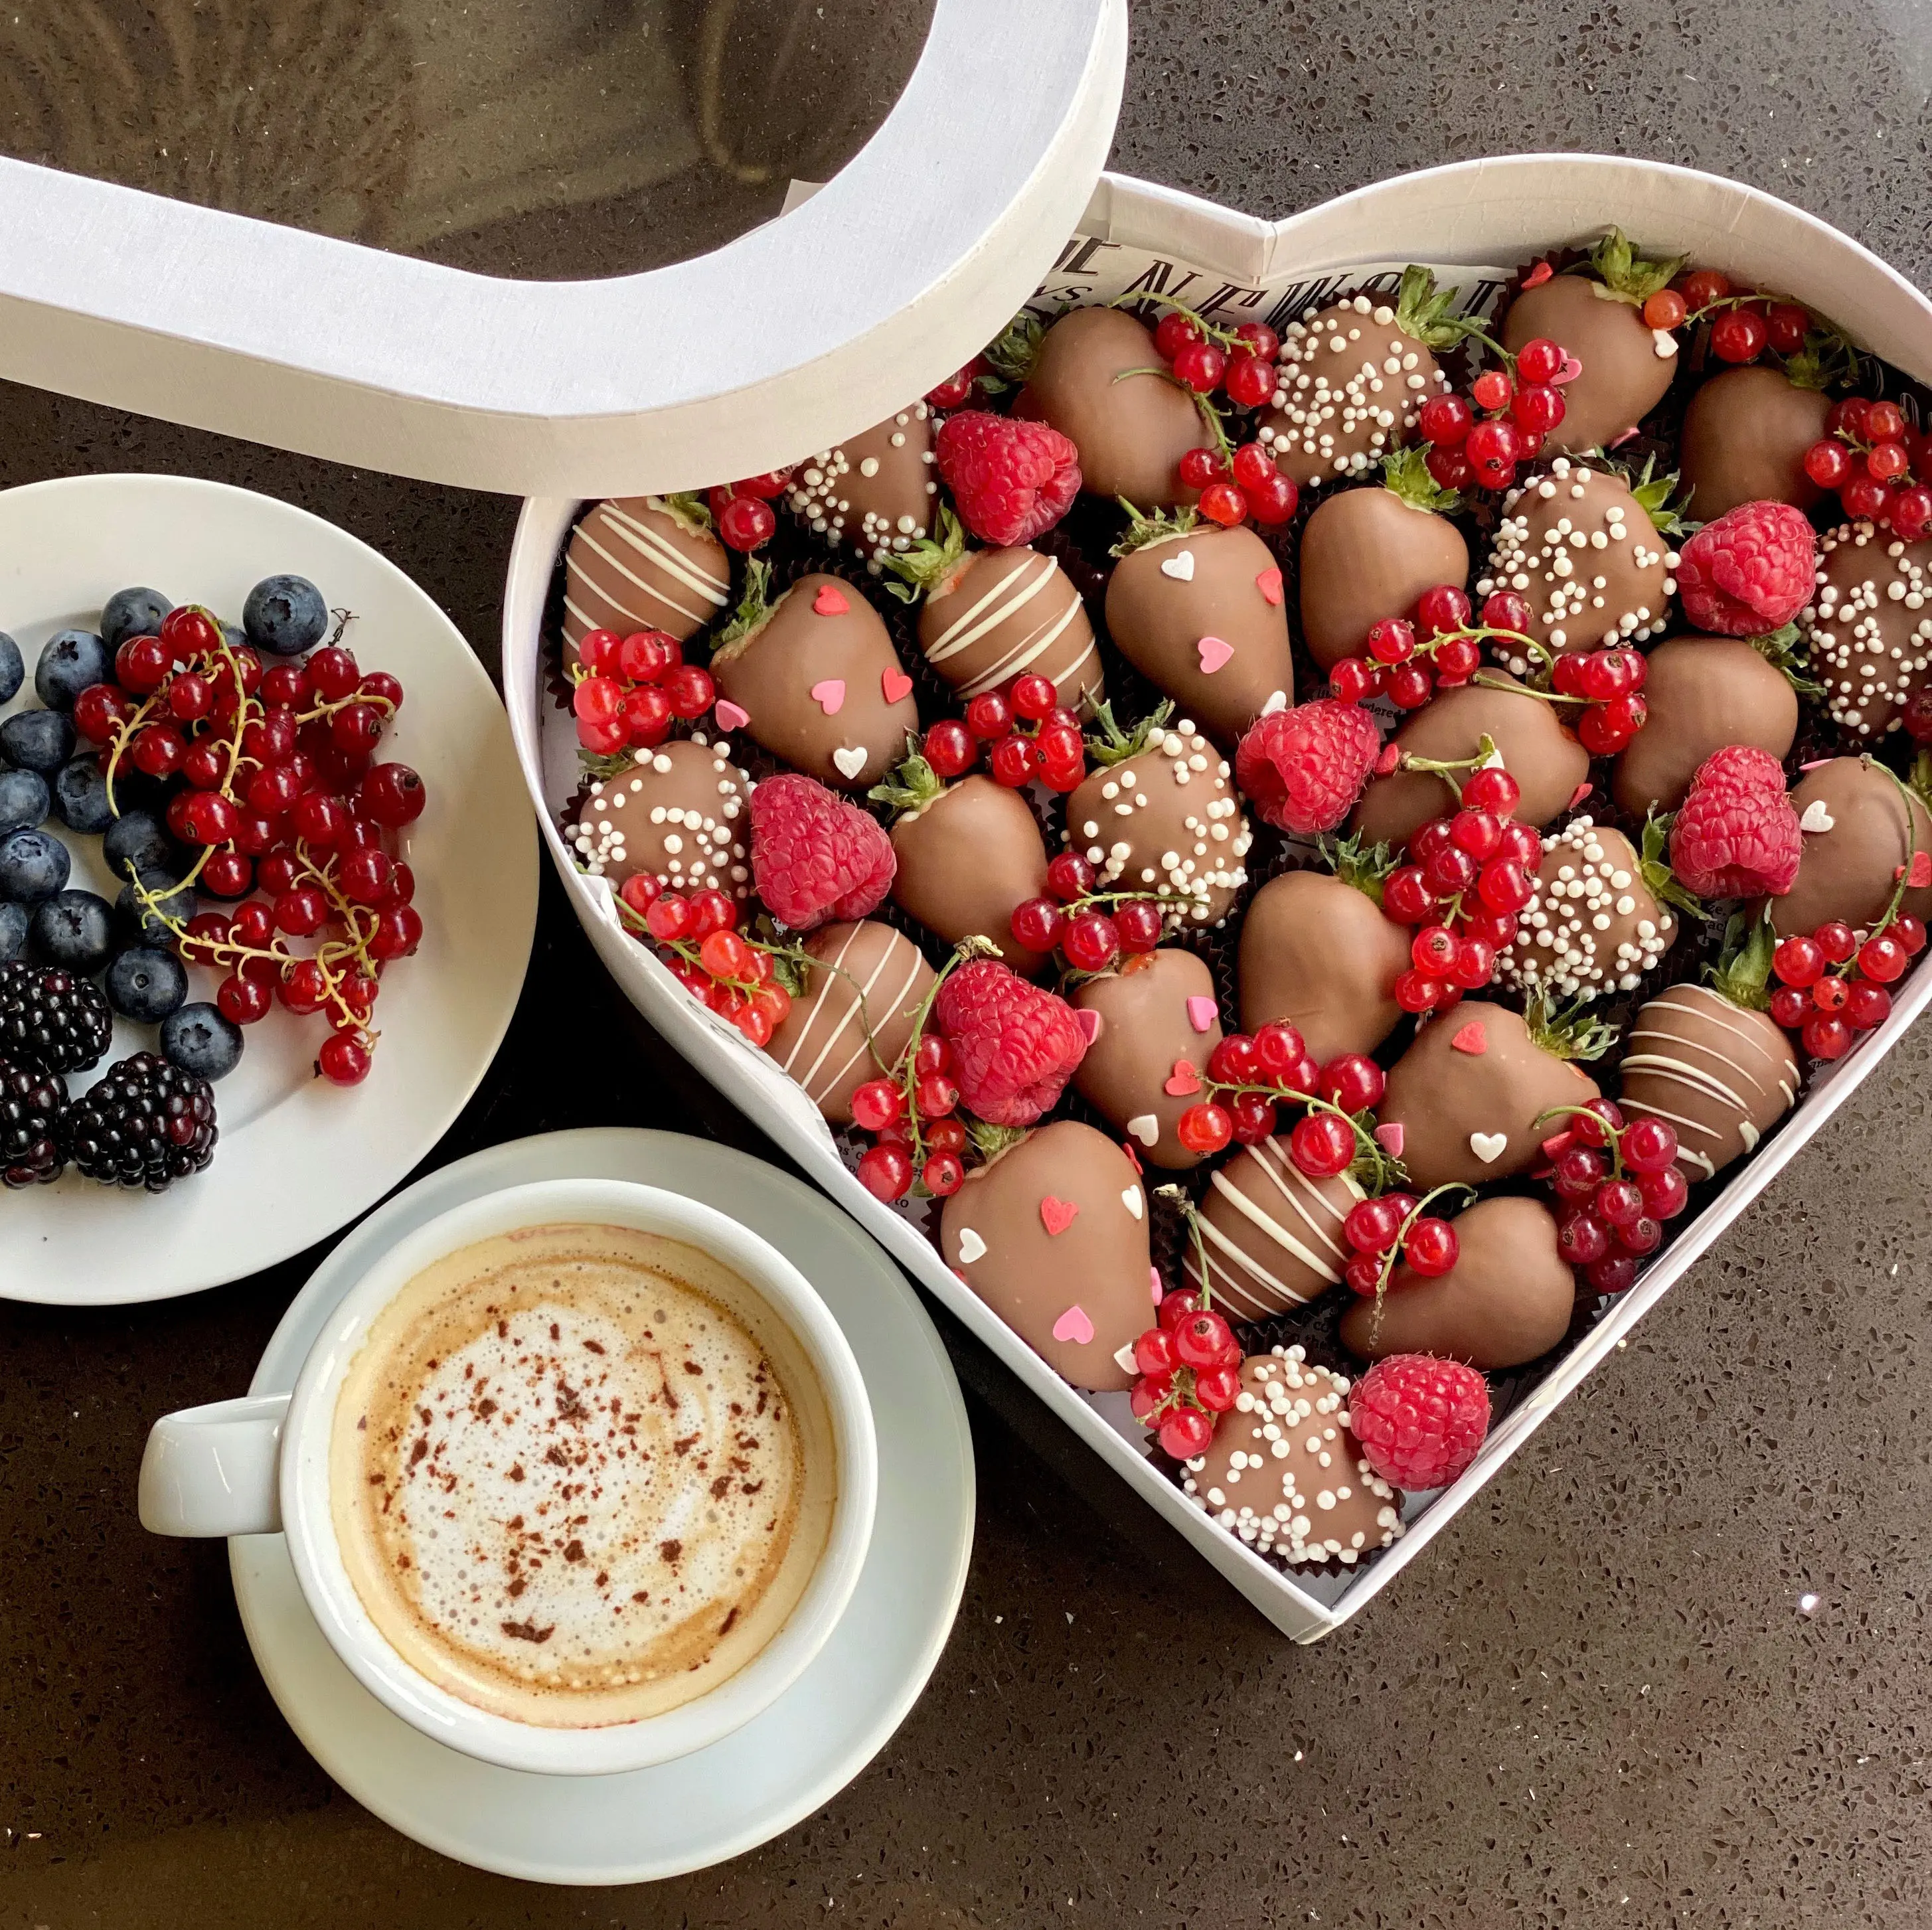 Подарочный набор из ягод в бельгийском шоколаде "Сердце"4 800 руб.. Фото N2